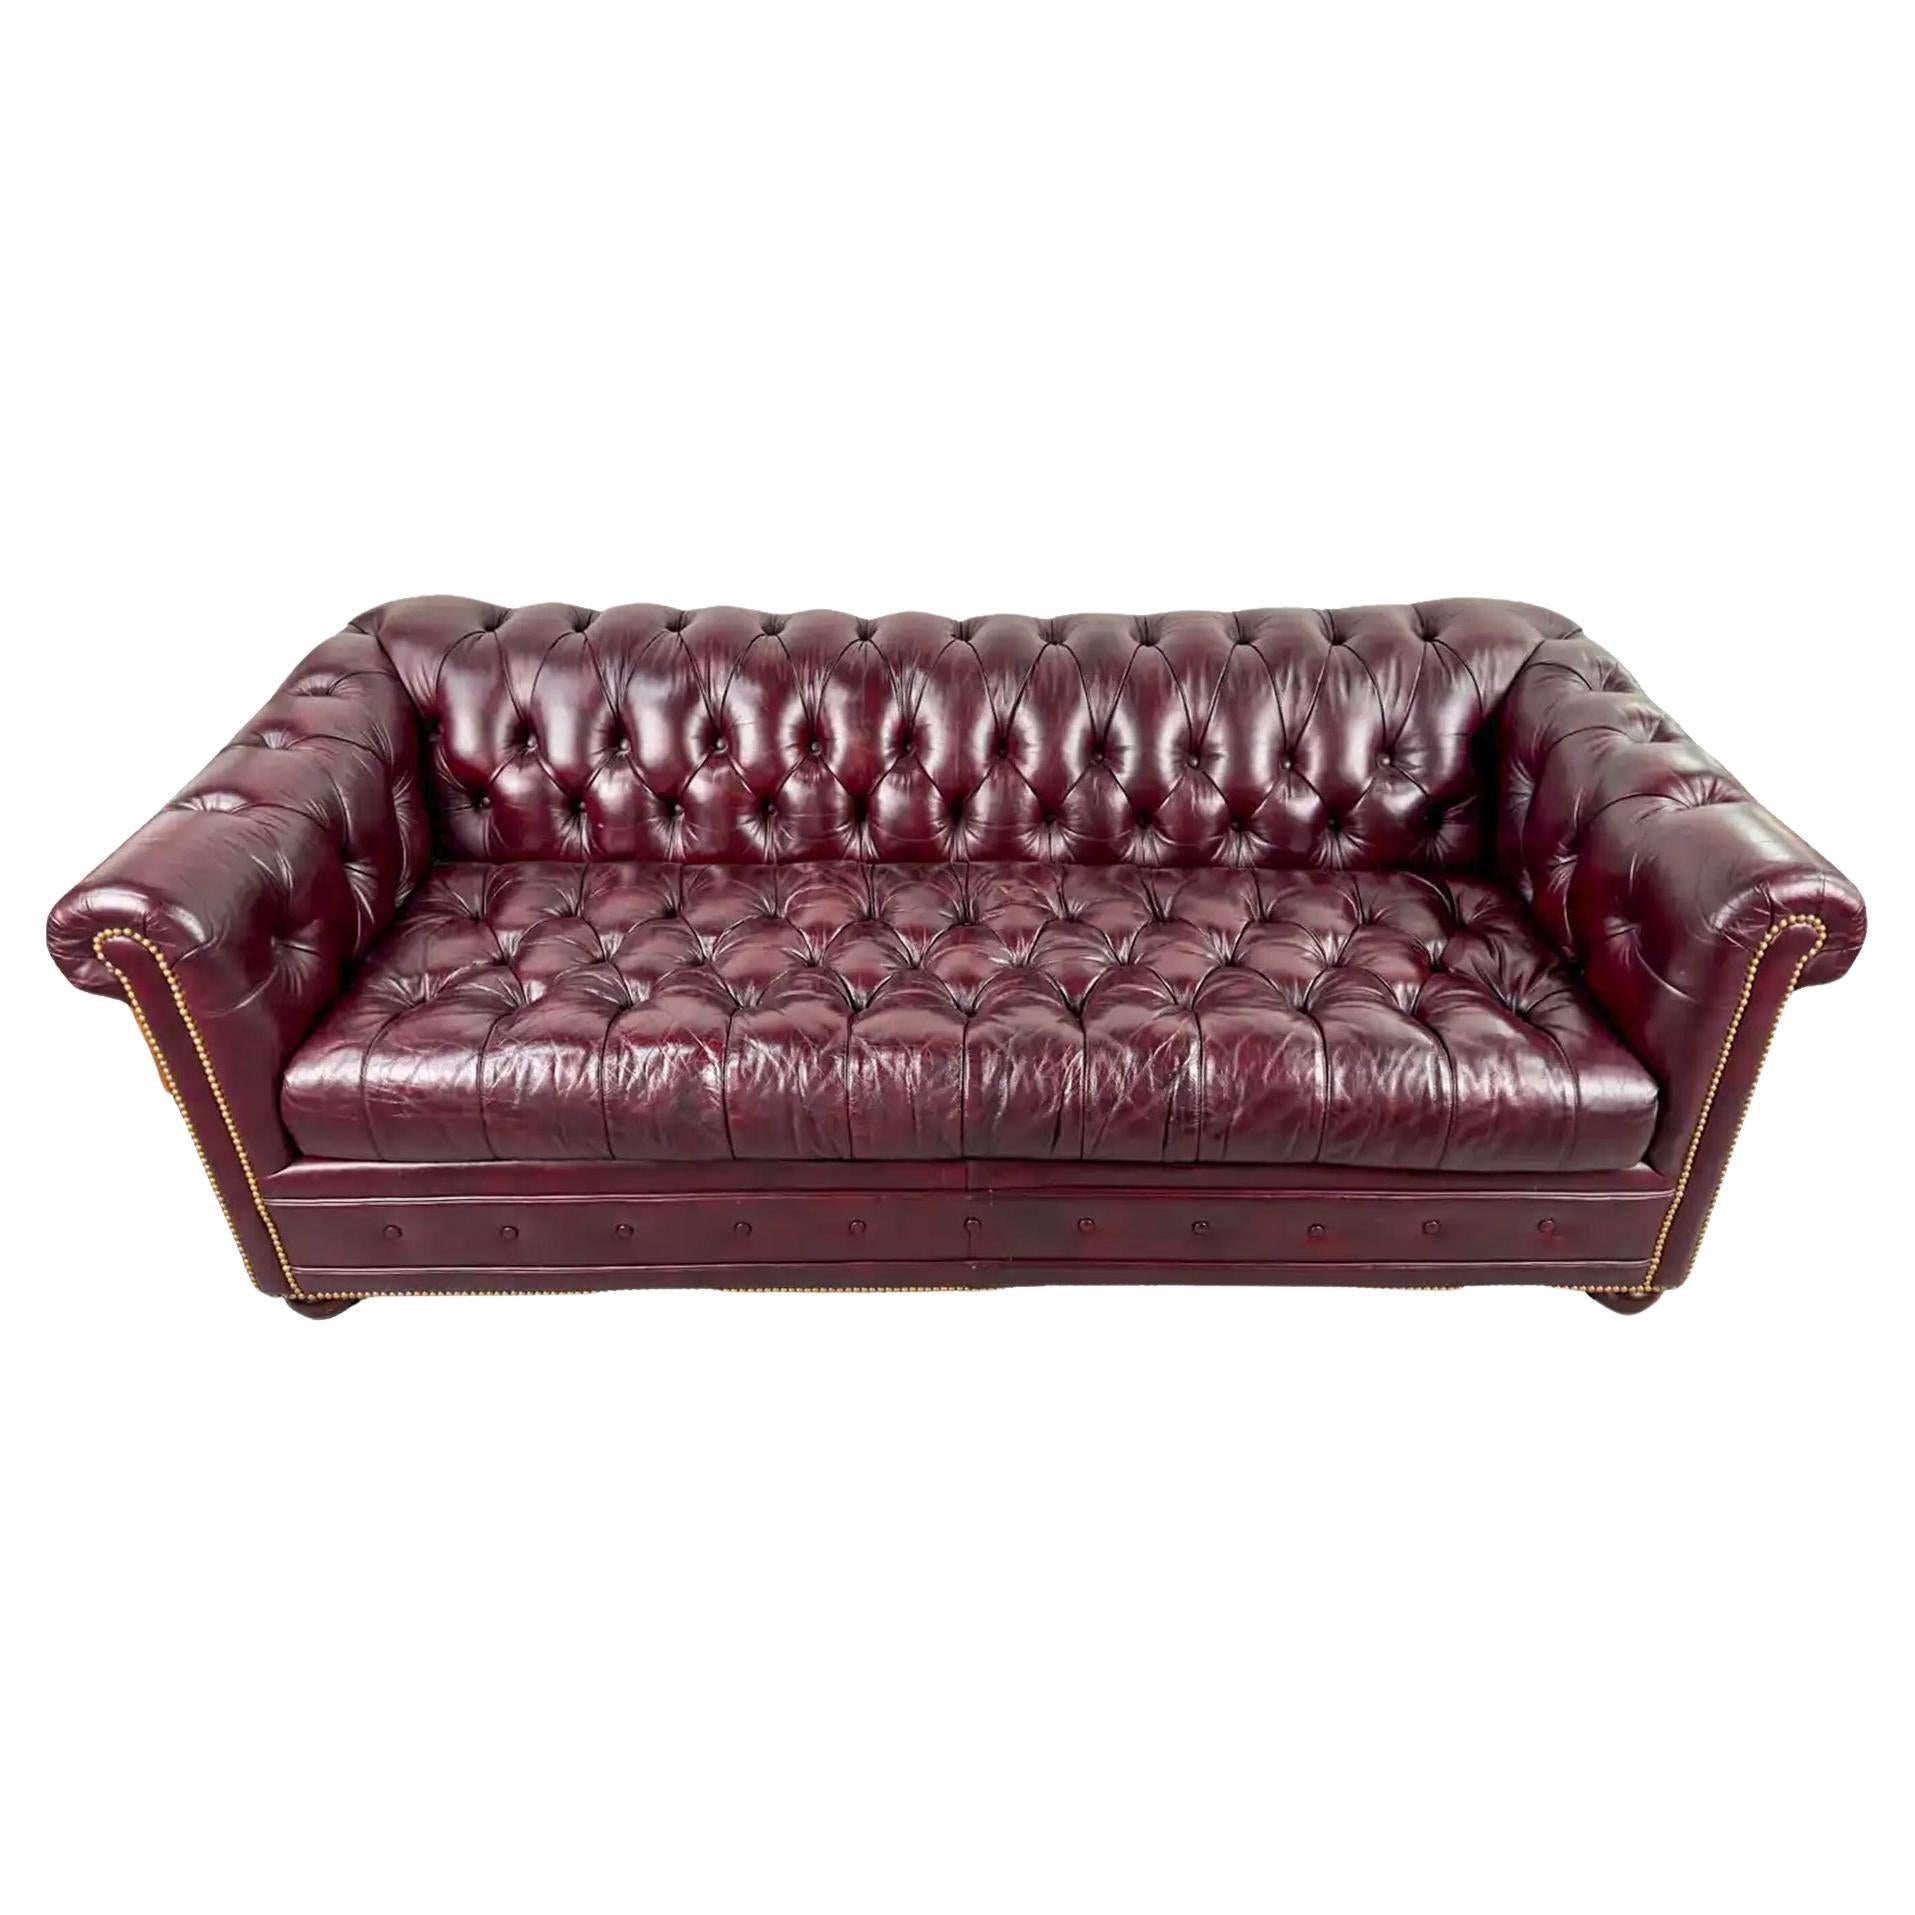 Hancock & Moore Chesterfield Cranberry Leder-Sofa und Sofabett im englischen Stil